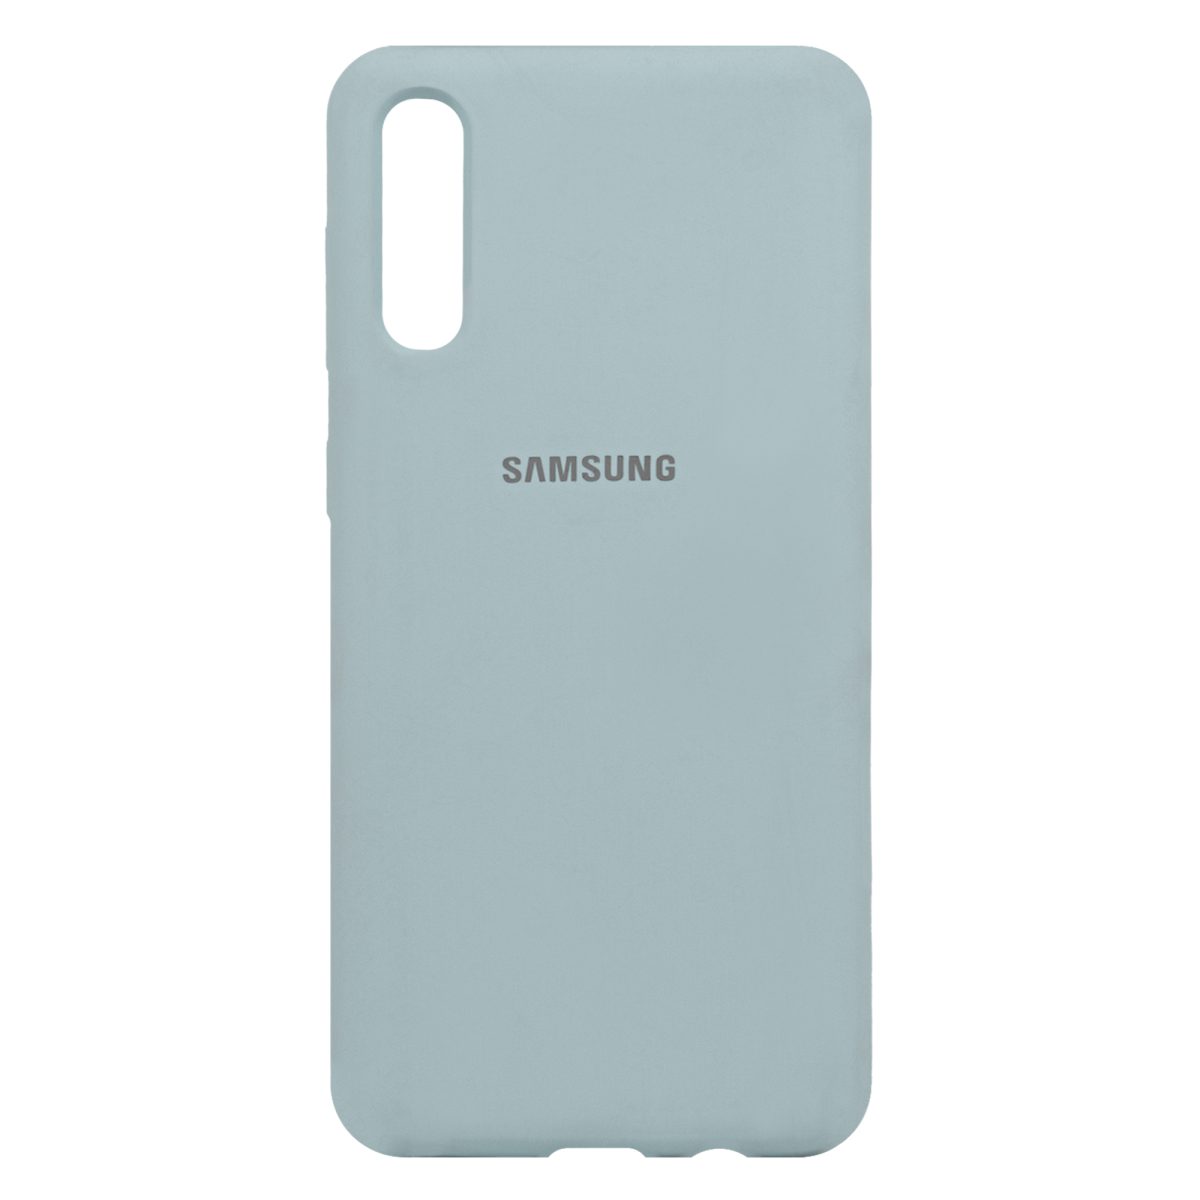 کاور سیلیکونی سربی مدل Shape مناسب برای گوشی موبایل سامسونگ Galaxy A30, A50s